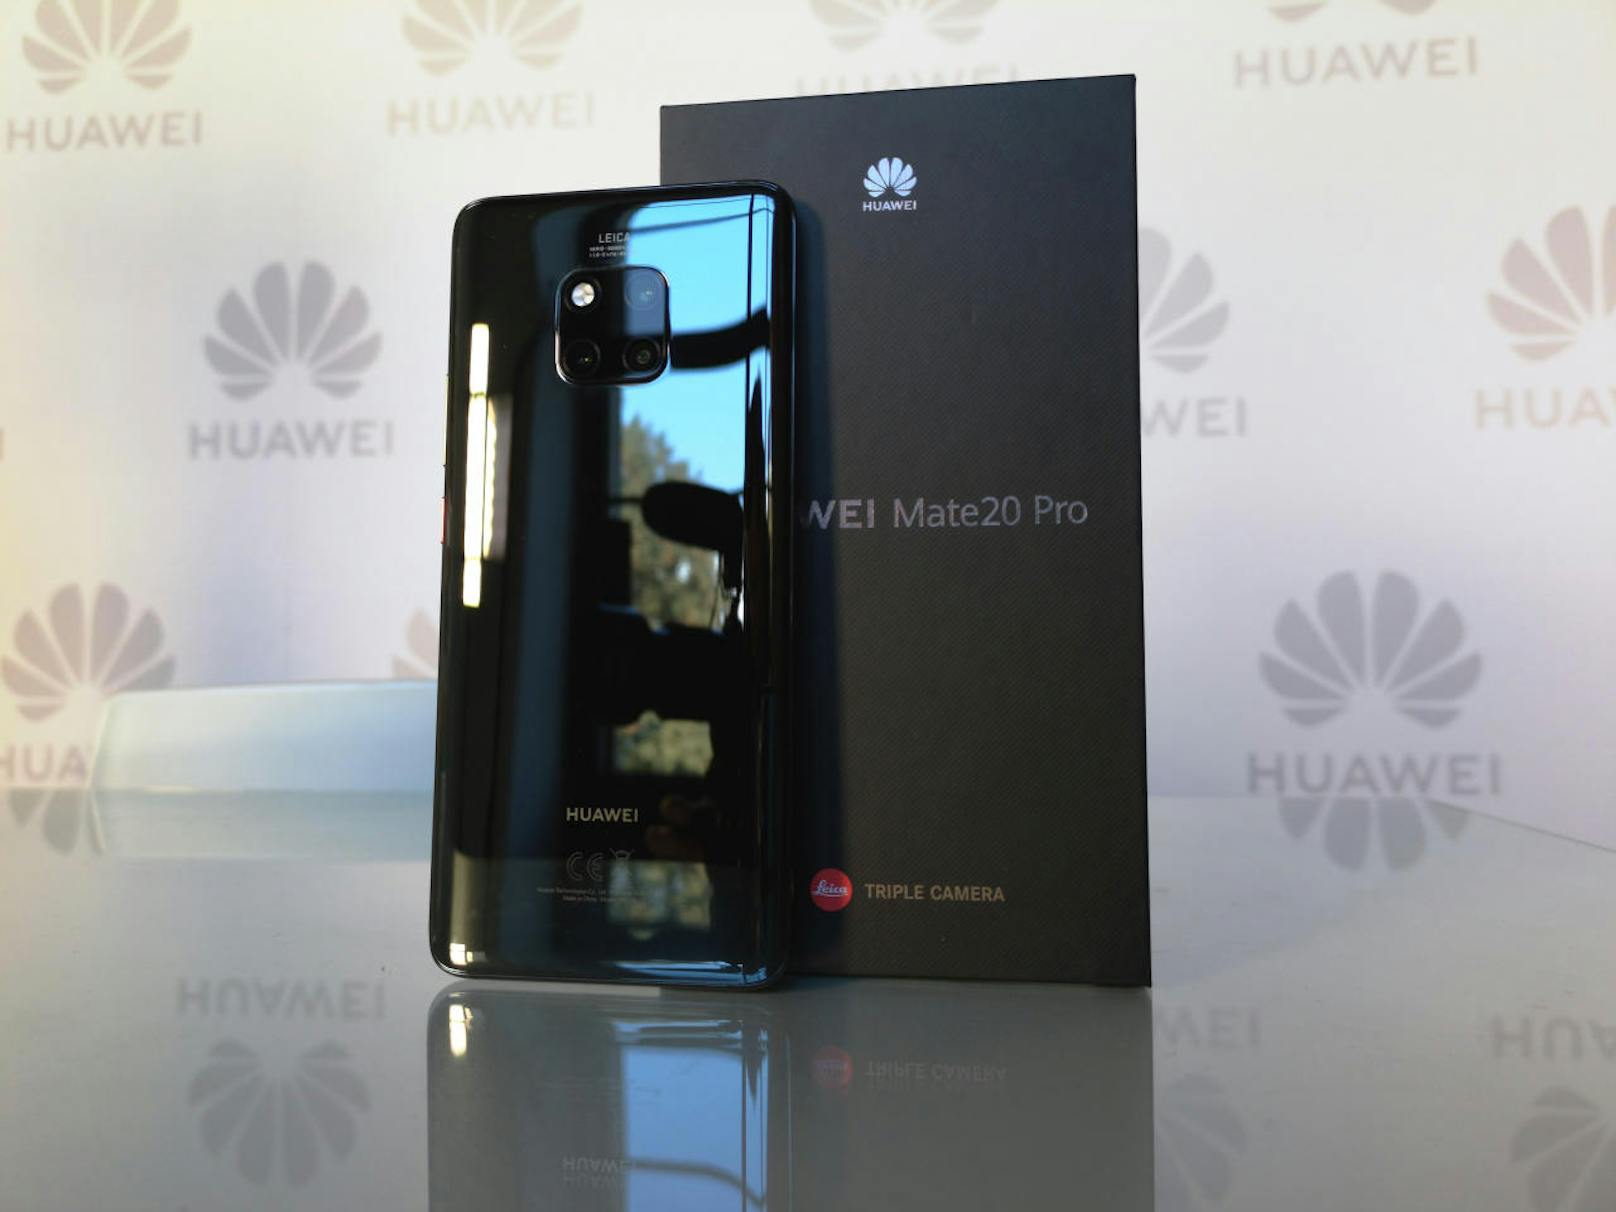 Schon die Ausstattung deutet darauf hin, dass es Huawei beim Mate 20 Pro aufs Tempo abgesehen hat. An Bord sind neben dem nun erweiterbaren 128 GB internem Speicher auch 6 GB Arbeitsspeicher, USB 3.1, Schnellladefunktionen, Dual-SIM, 4.200 mAh Akku, Bluetooth 5.0 und die neueste LTE-Kategorie 21 (bis zu 1,732 Gigabit pro Sekunde im WLAN).